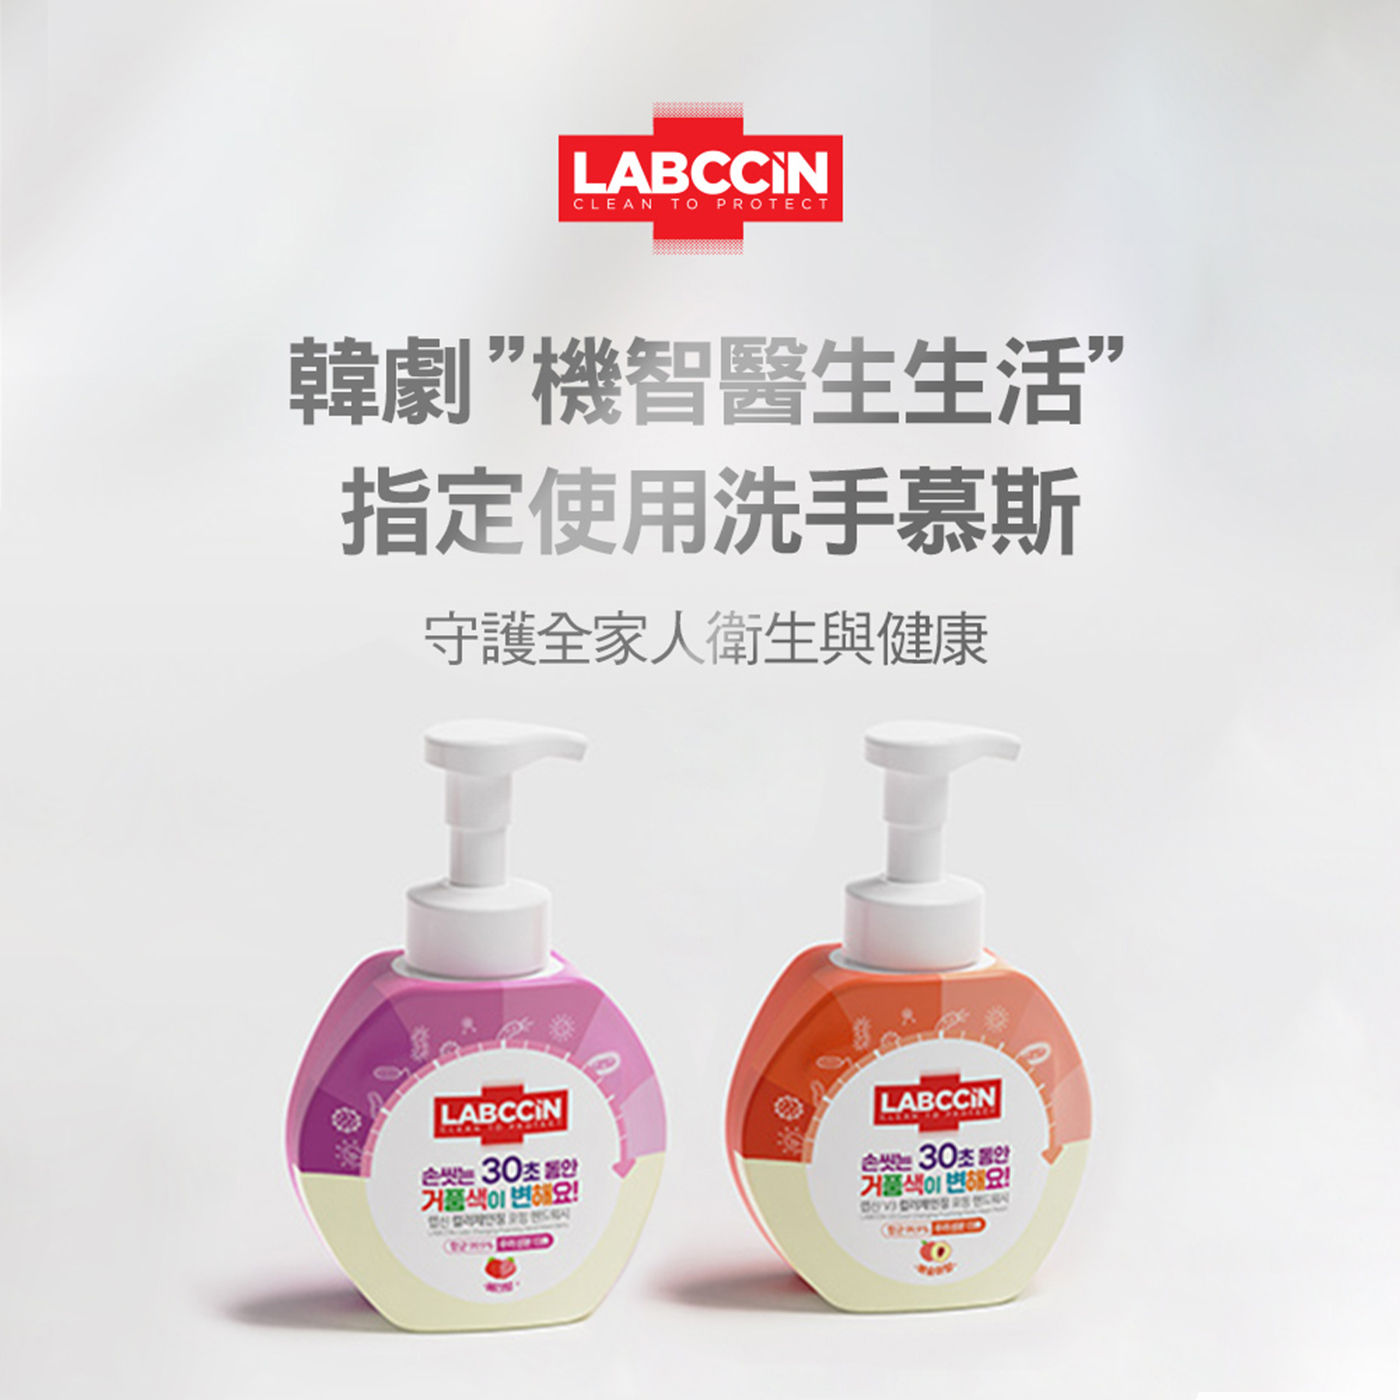 LABCCIN 變色洗手慕斯韓劇機智醫生生活指定使用洗手慕斯，守護全家人衛生與健康